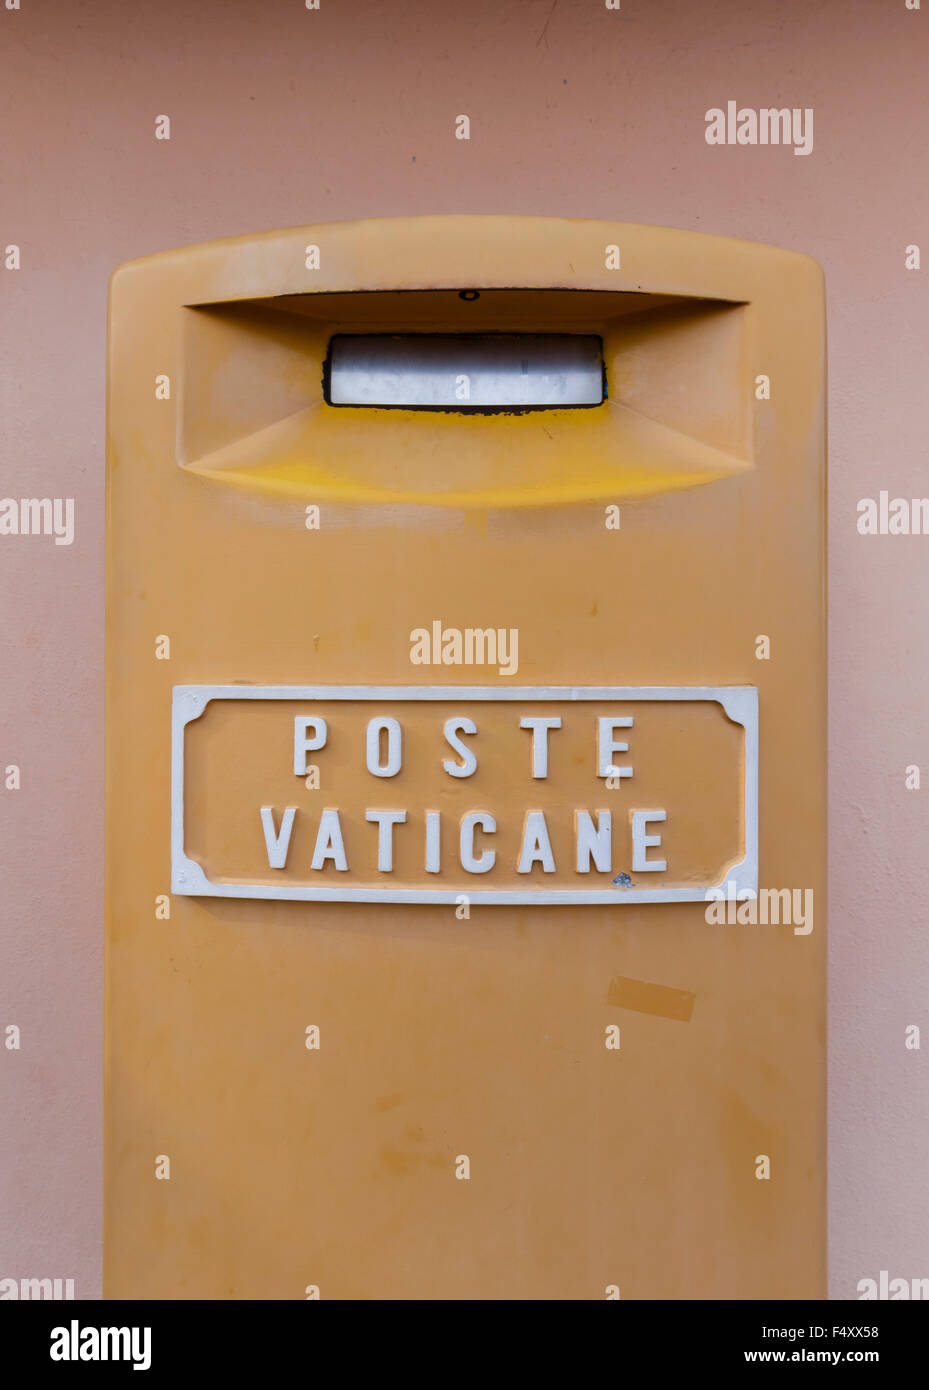 Boîte aux lettres de la poste vaticane, le service postal de souverain de la Cité du Vatican, à l'extérieur de l'étage supérieur de la Basilique Saint-Pierre, Vatican. Banque D'Images